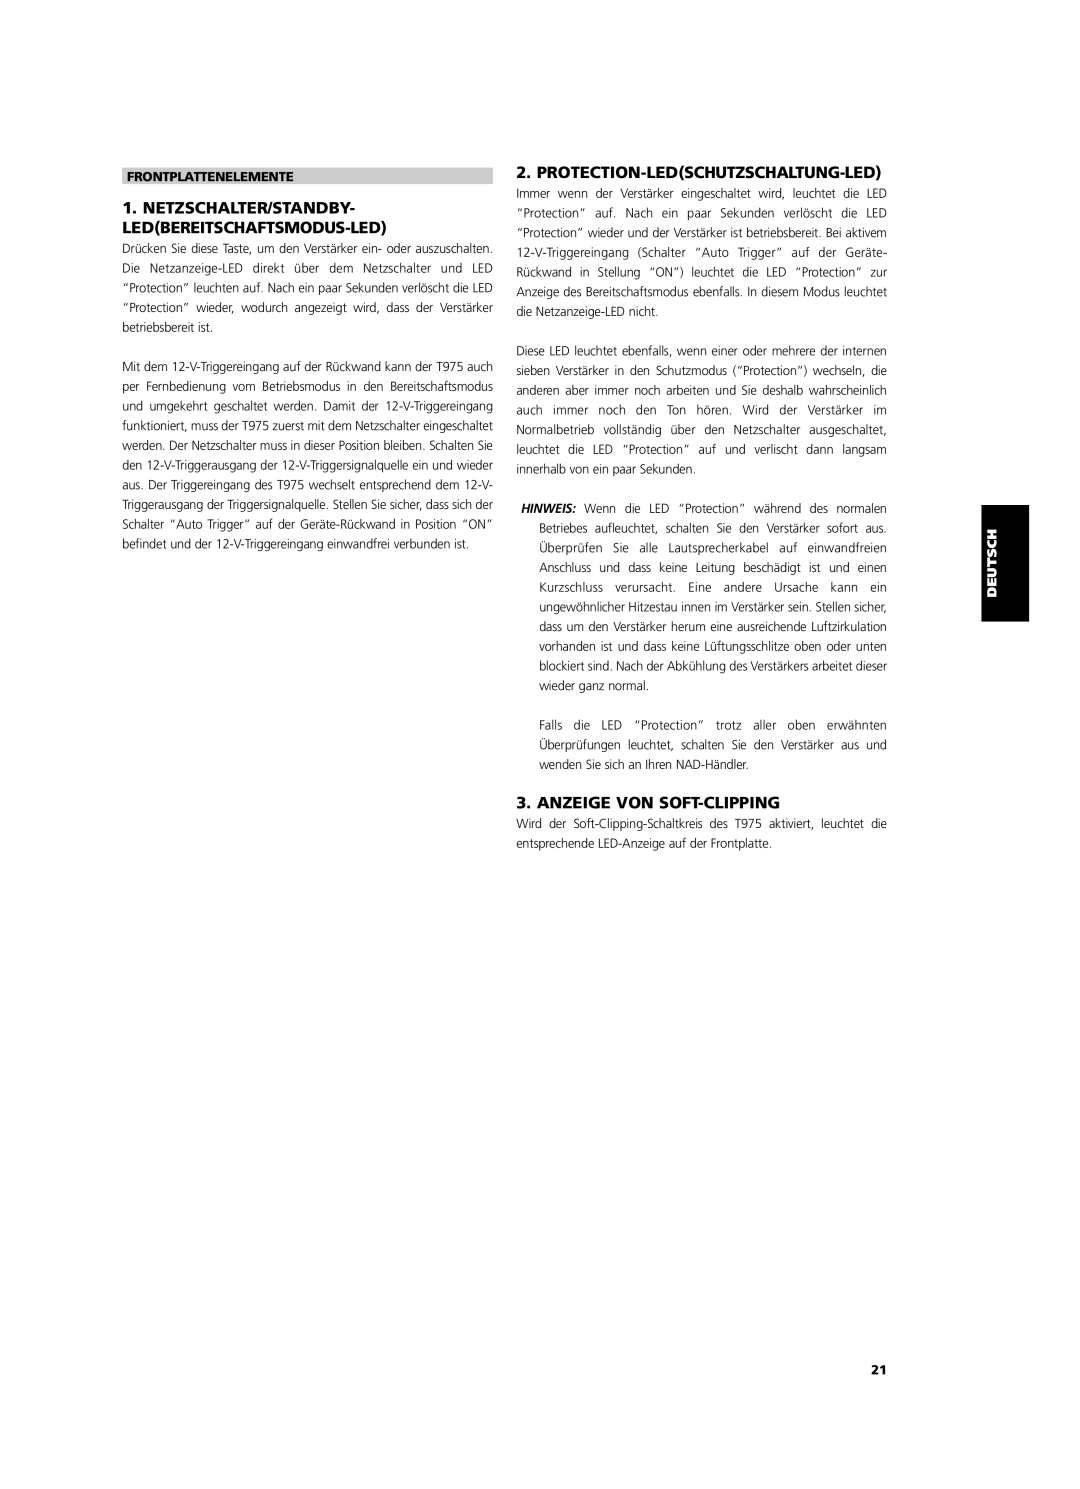 NAD T975 Netzschalter/Standby- Ledbereitschaftsmodus-Led, Protection-Ledschutzschaltung-Led, Anzeige Von Soft-Clipping 